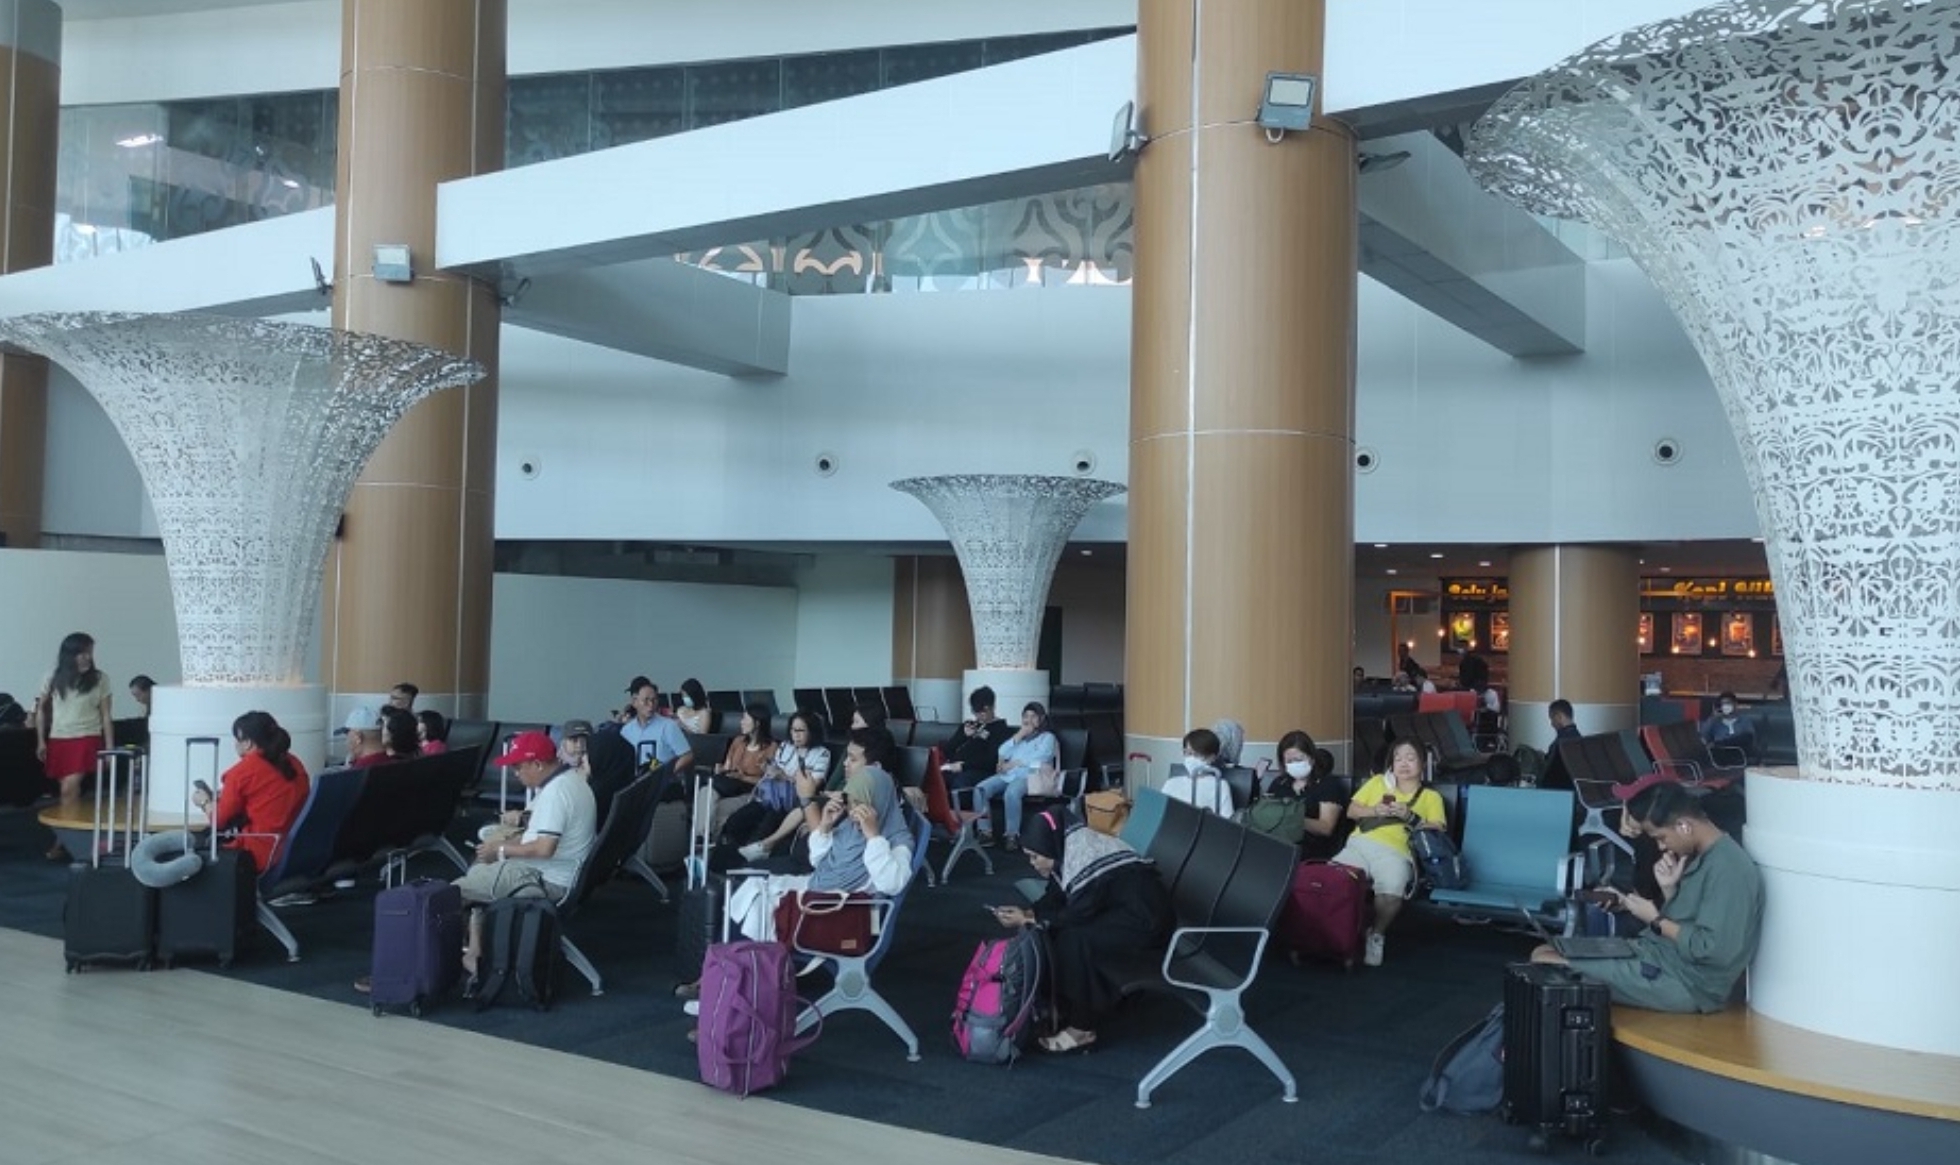 Calon Penumpang Bandara Kertajati Bisa Manfaatkan Aplikasi Travelin untuk Akses Layanan